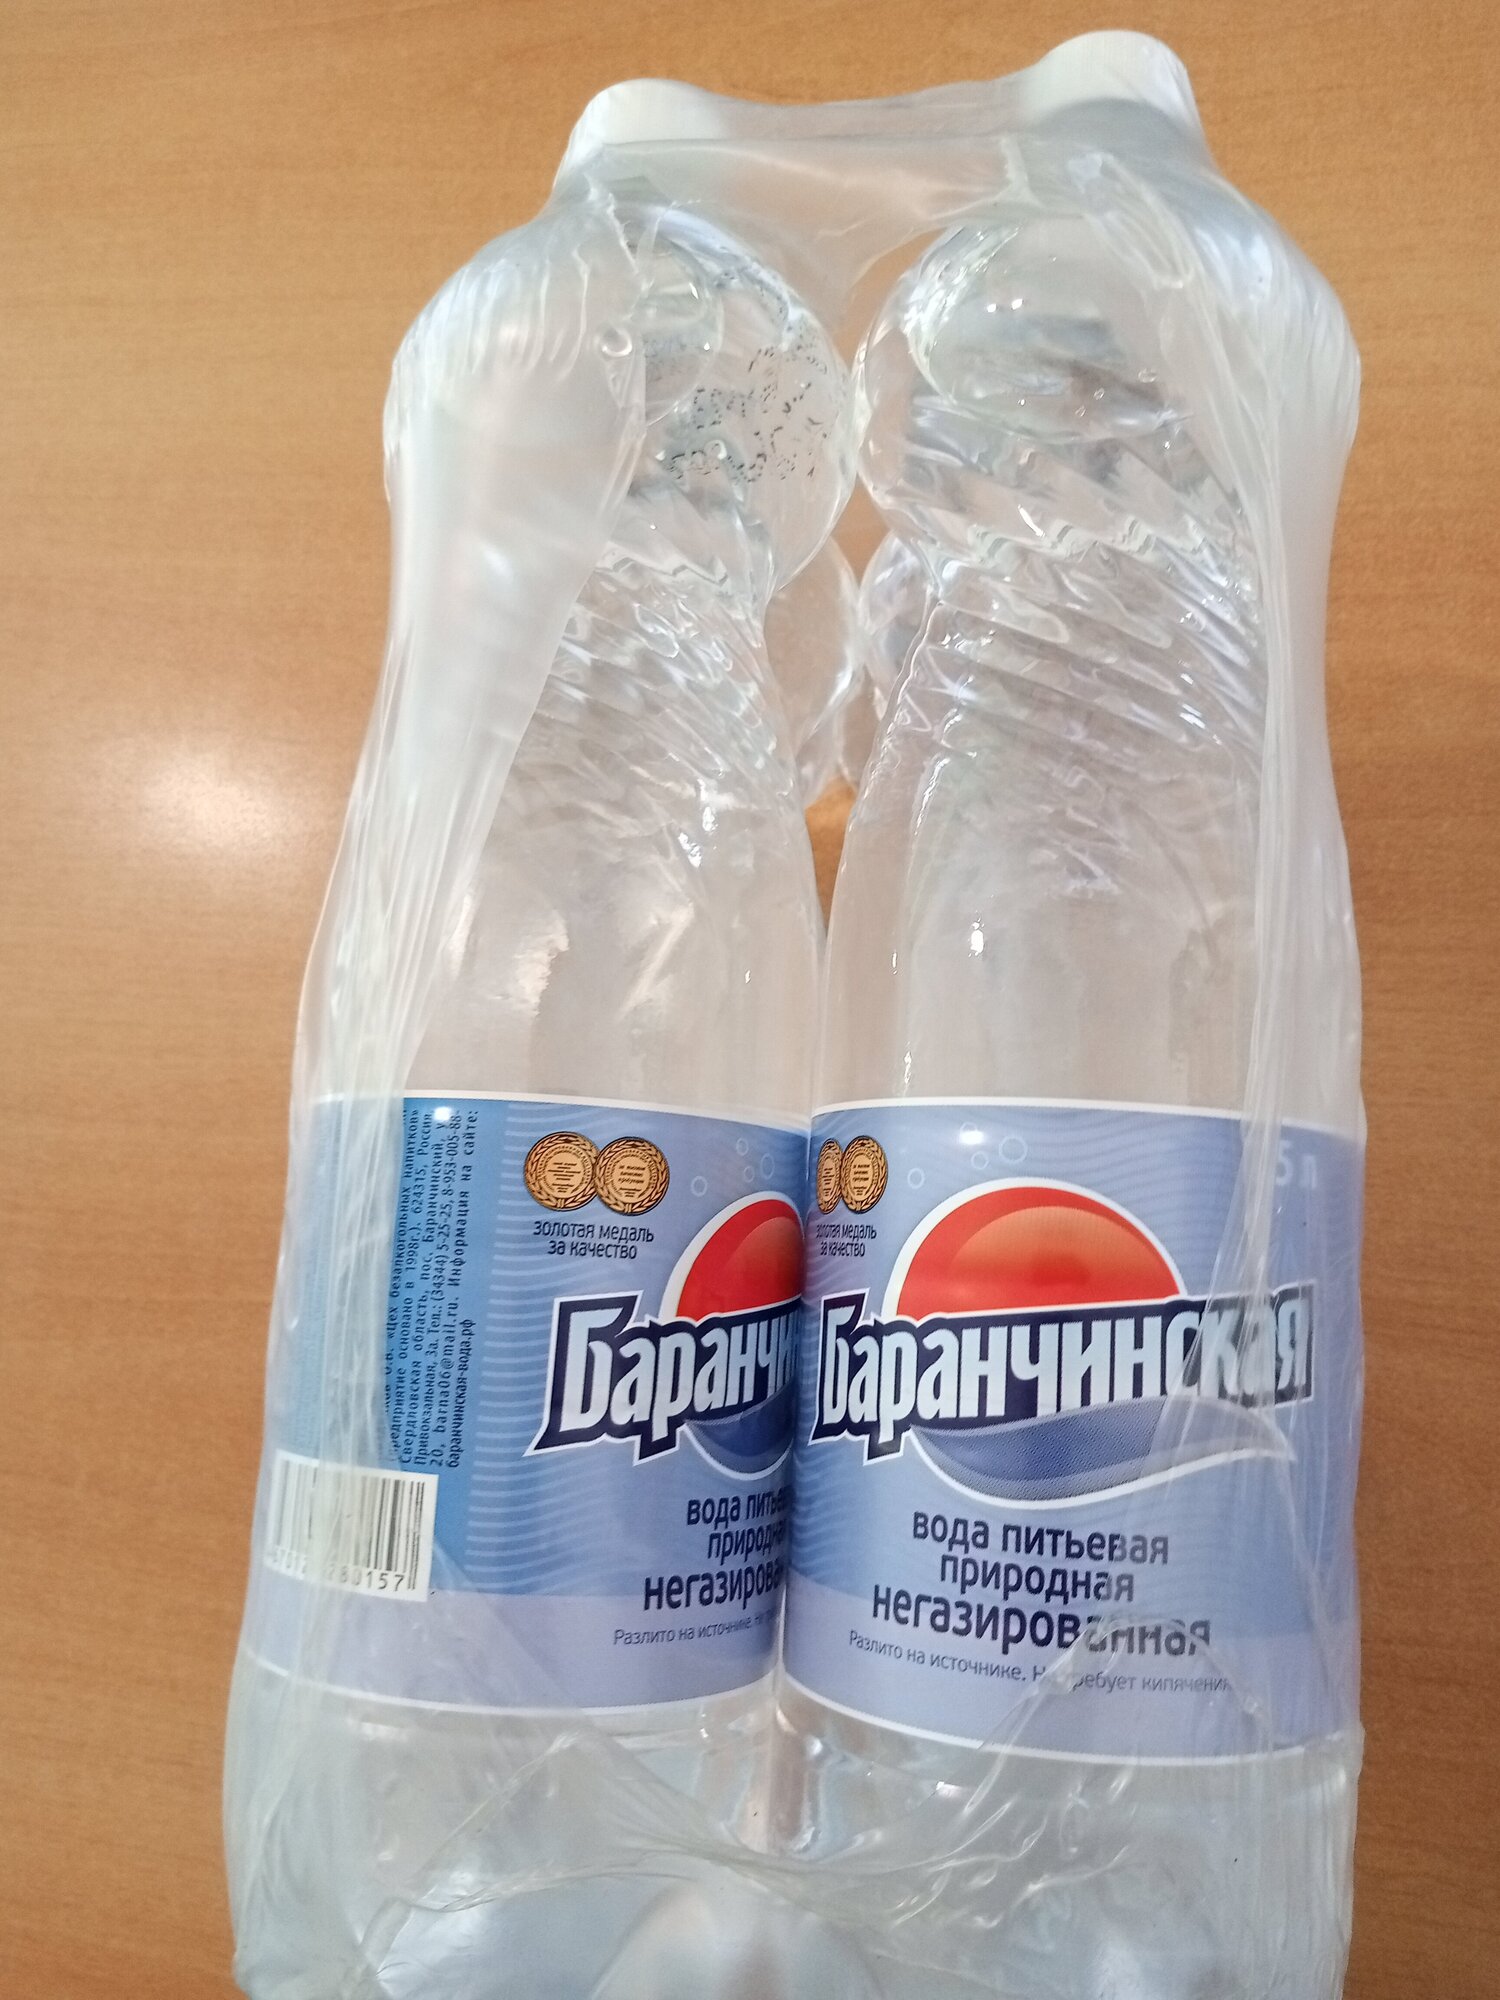 Вода питьевая "Баранчинская" 1,5 лит. 6 штук (заказ 1 упаковка) - фотография № 1